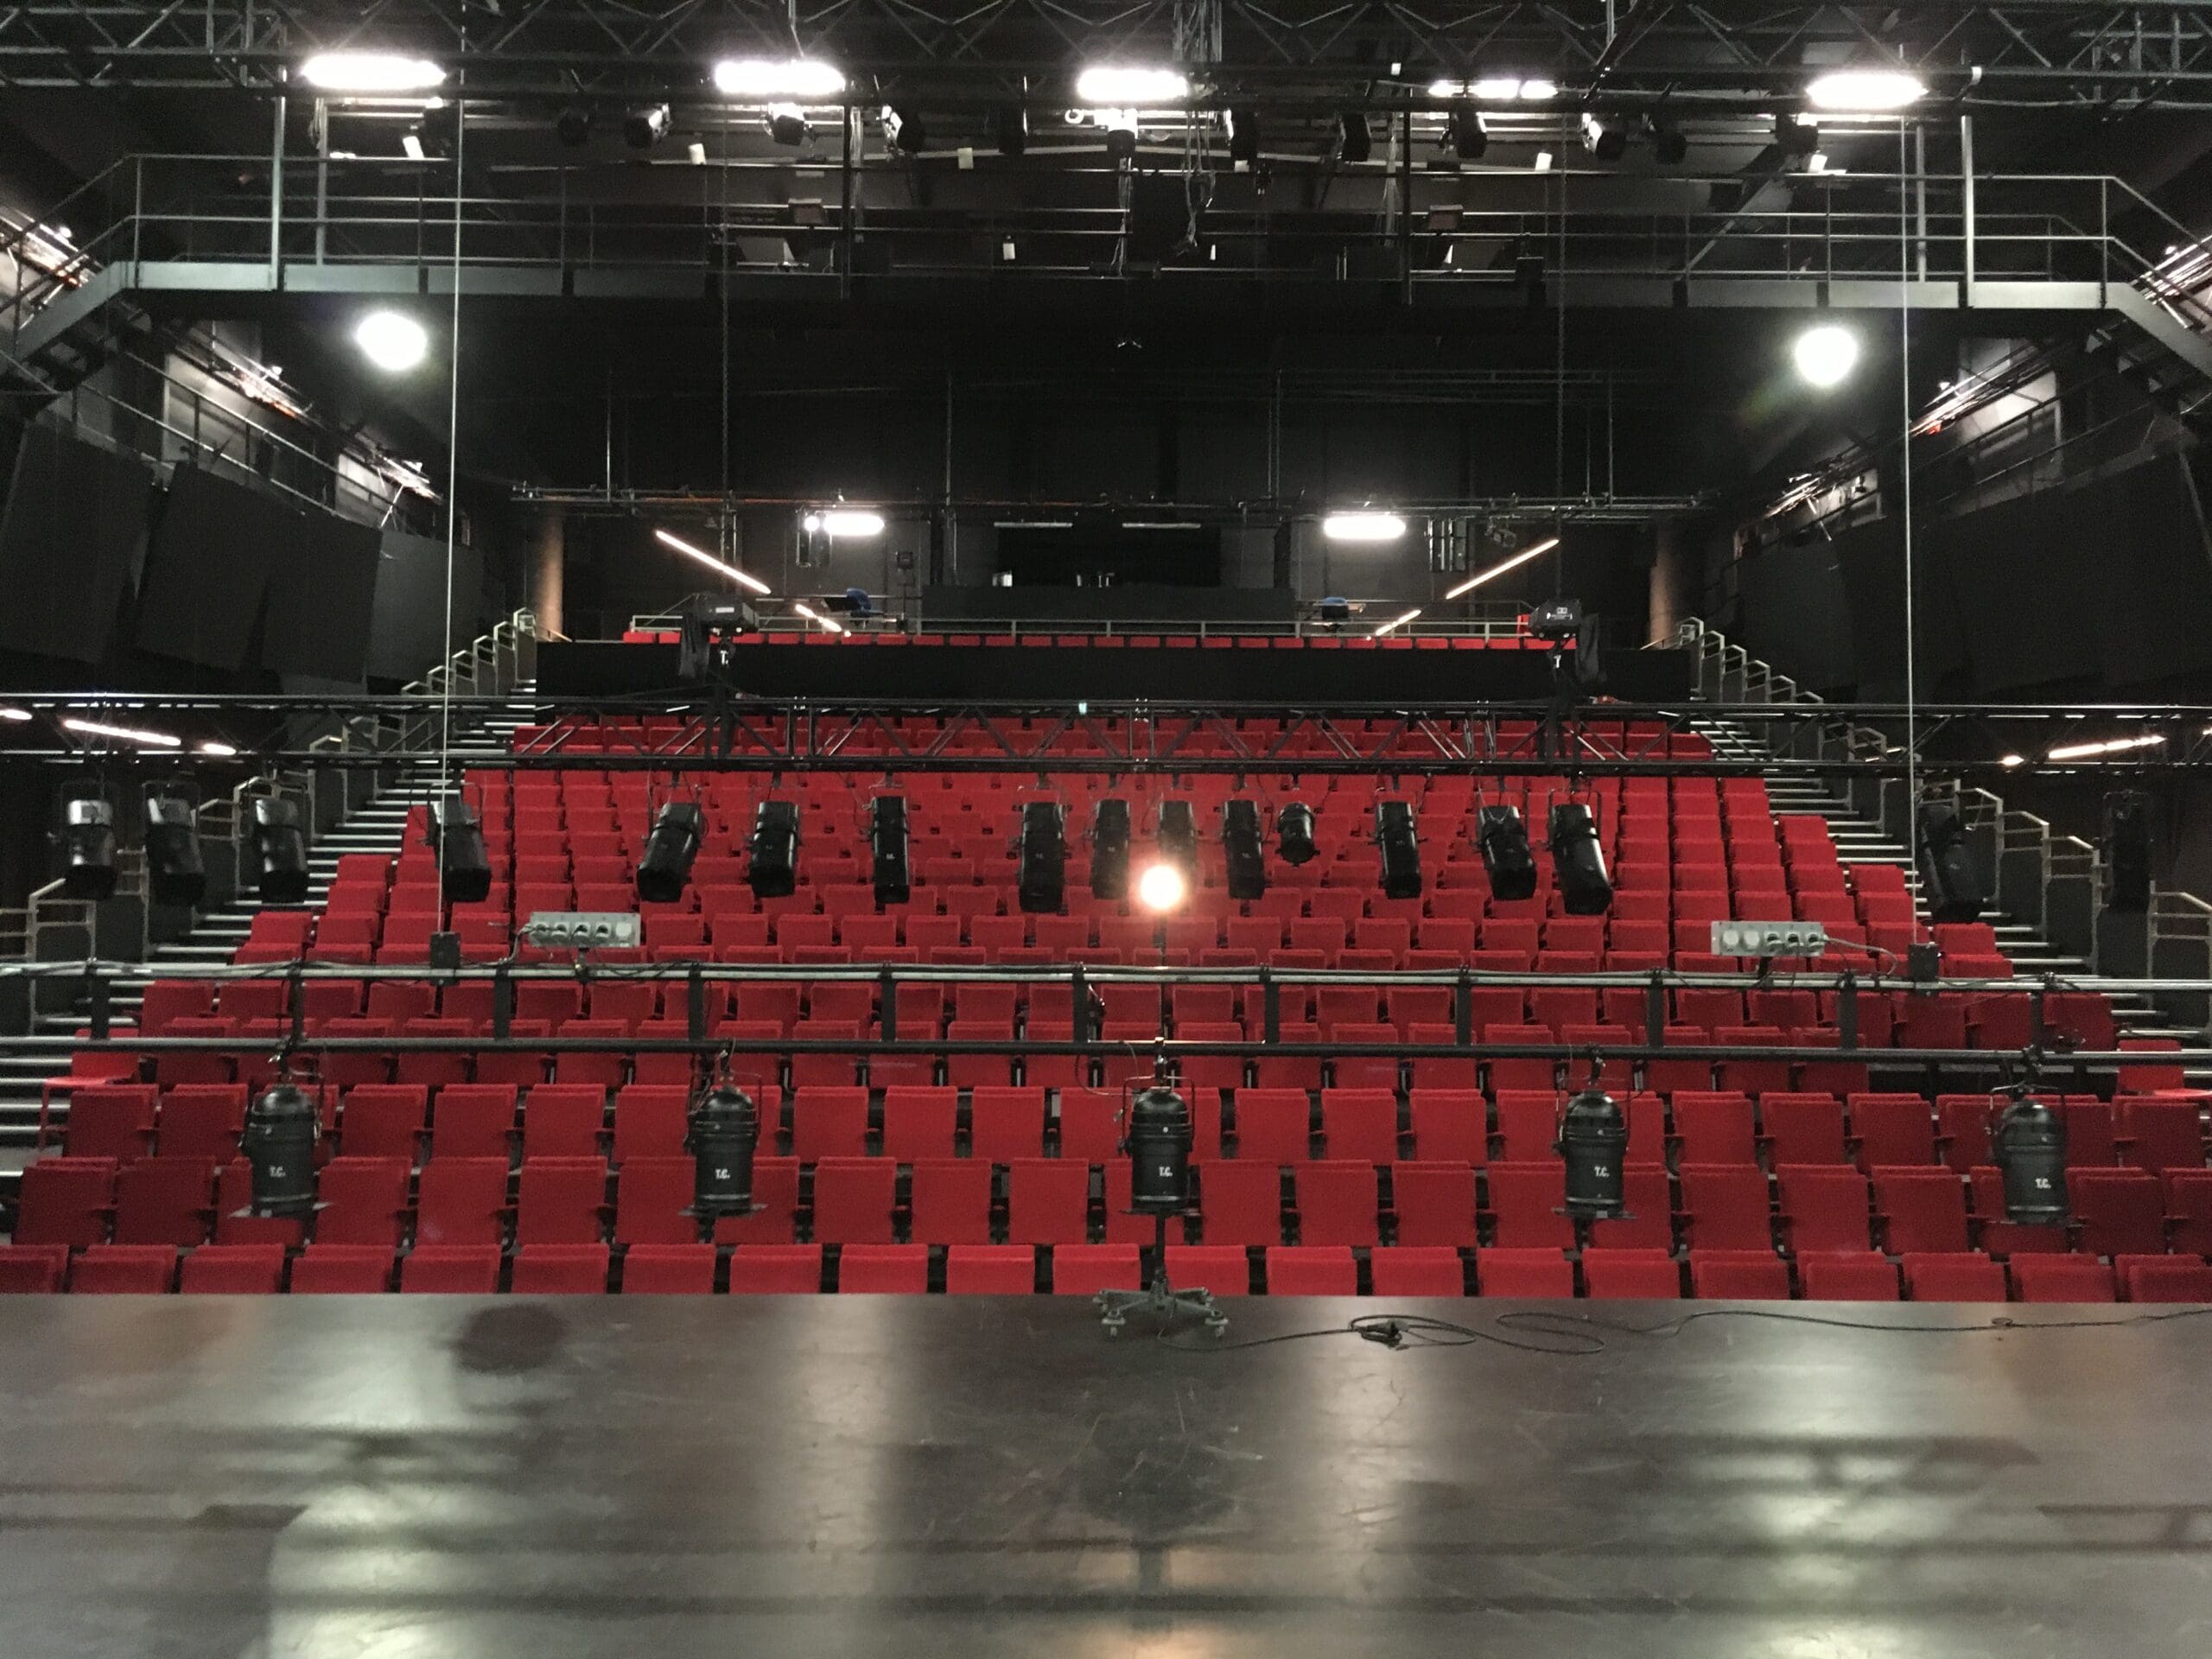 Stadt Nizza – Temporäres Theater während der Renovierung